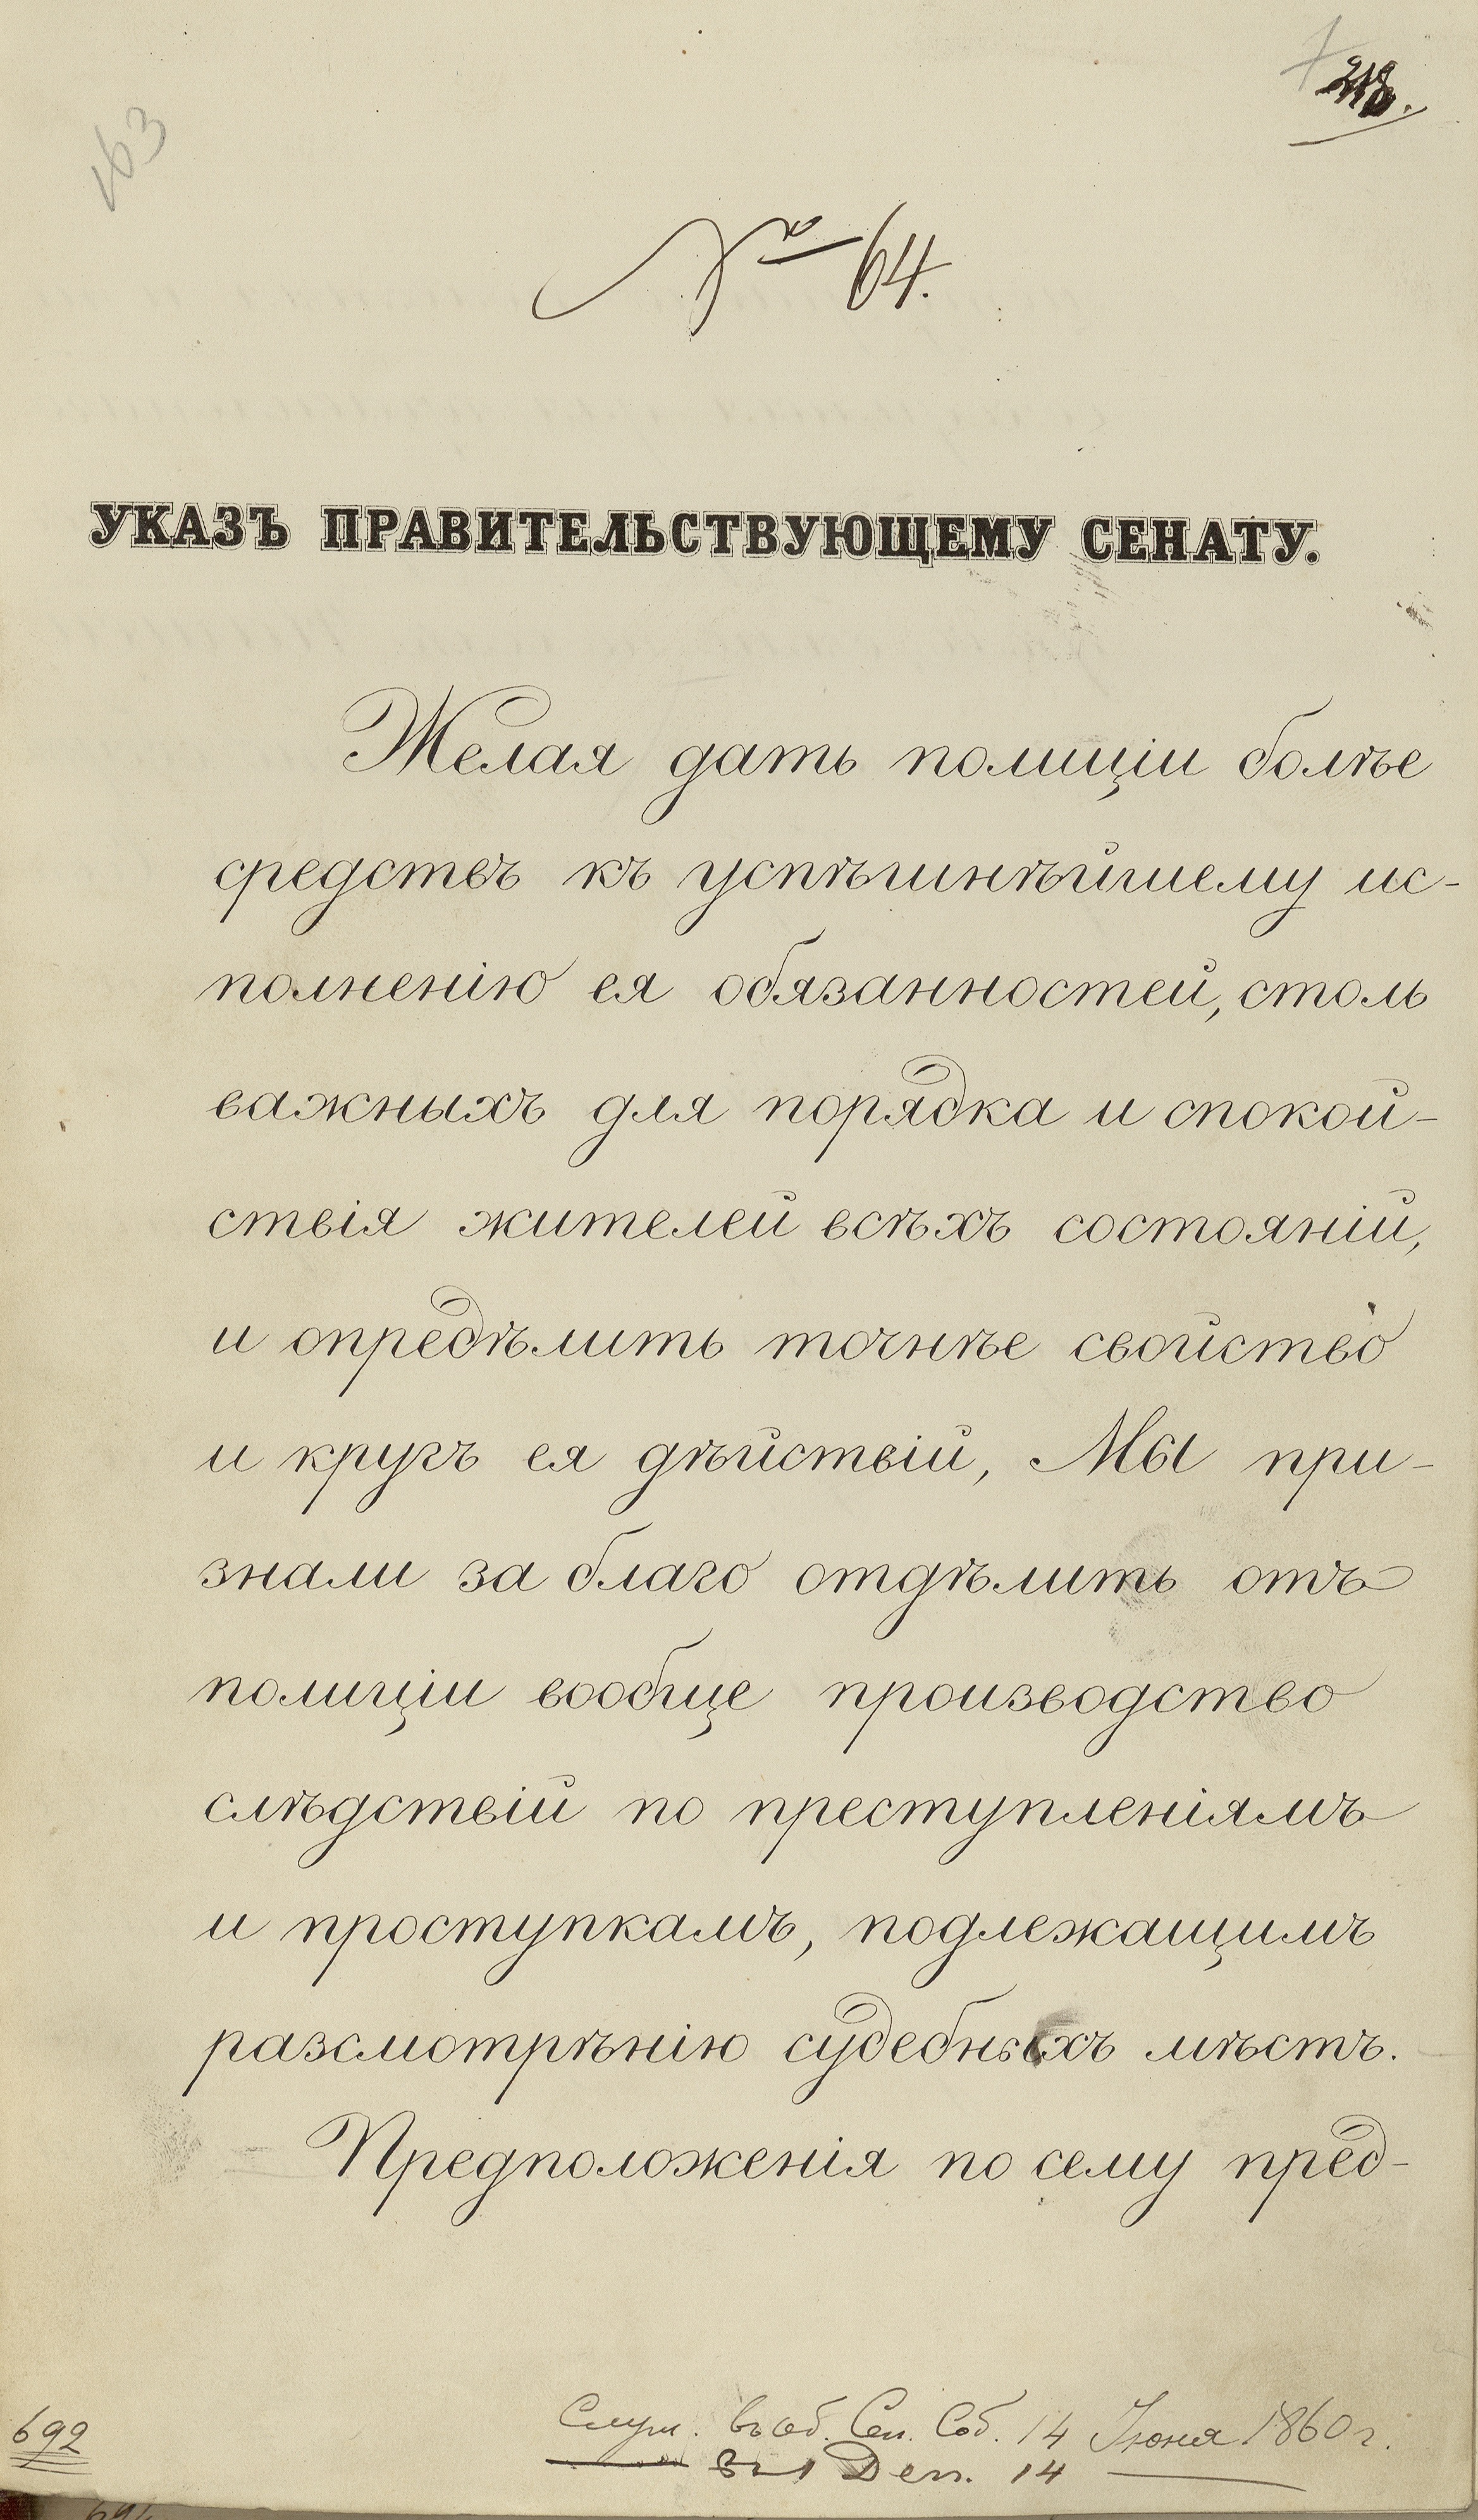 Pervyy list podlinnika imennogo ukaza ot 8 iyunya 1860 g. ob uchrezhdenii v Rossii sudebnykh sledovateley